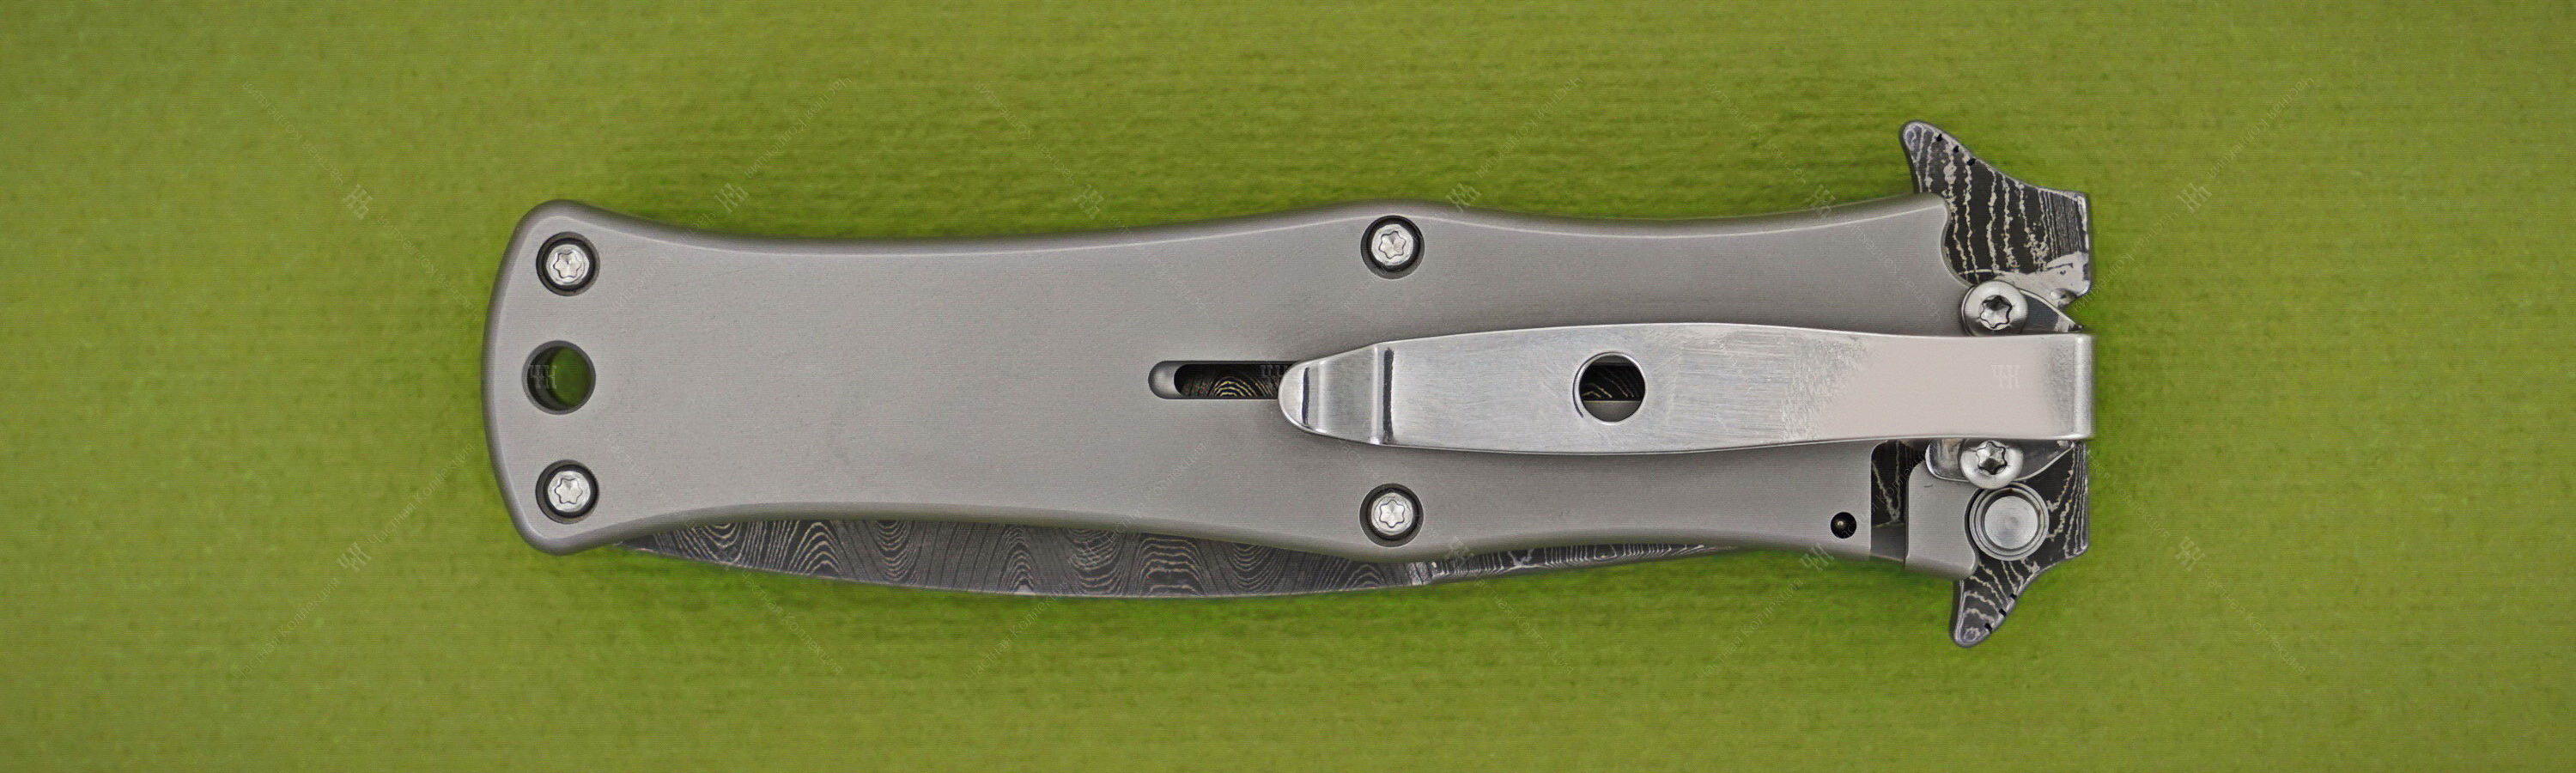 DDR Madd MAXX 4 knife titanium clip